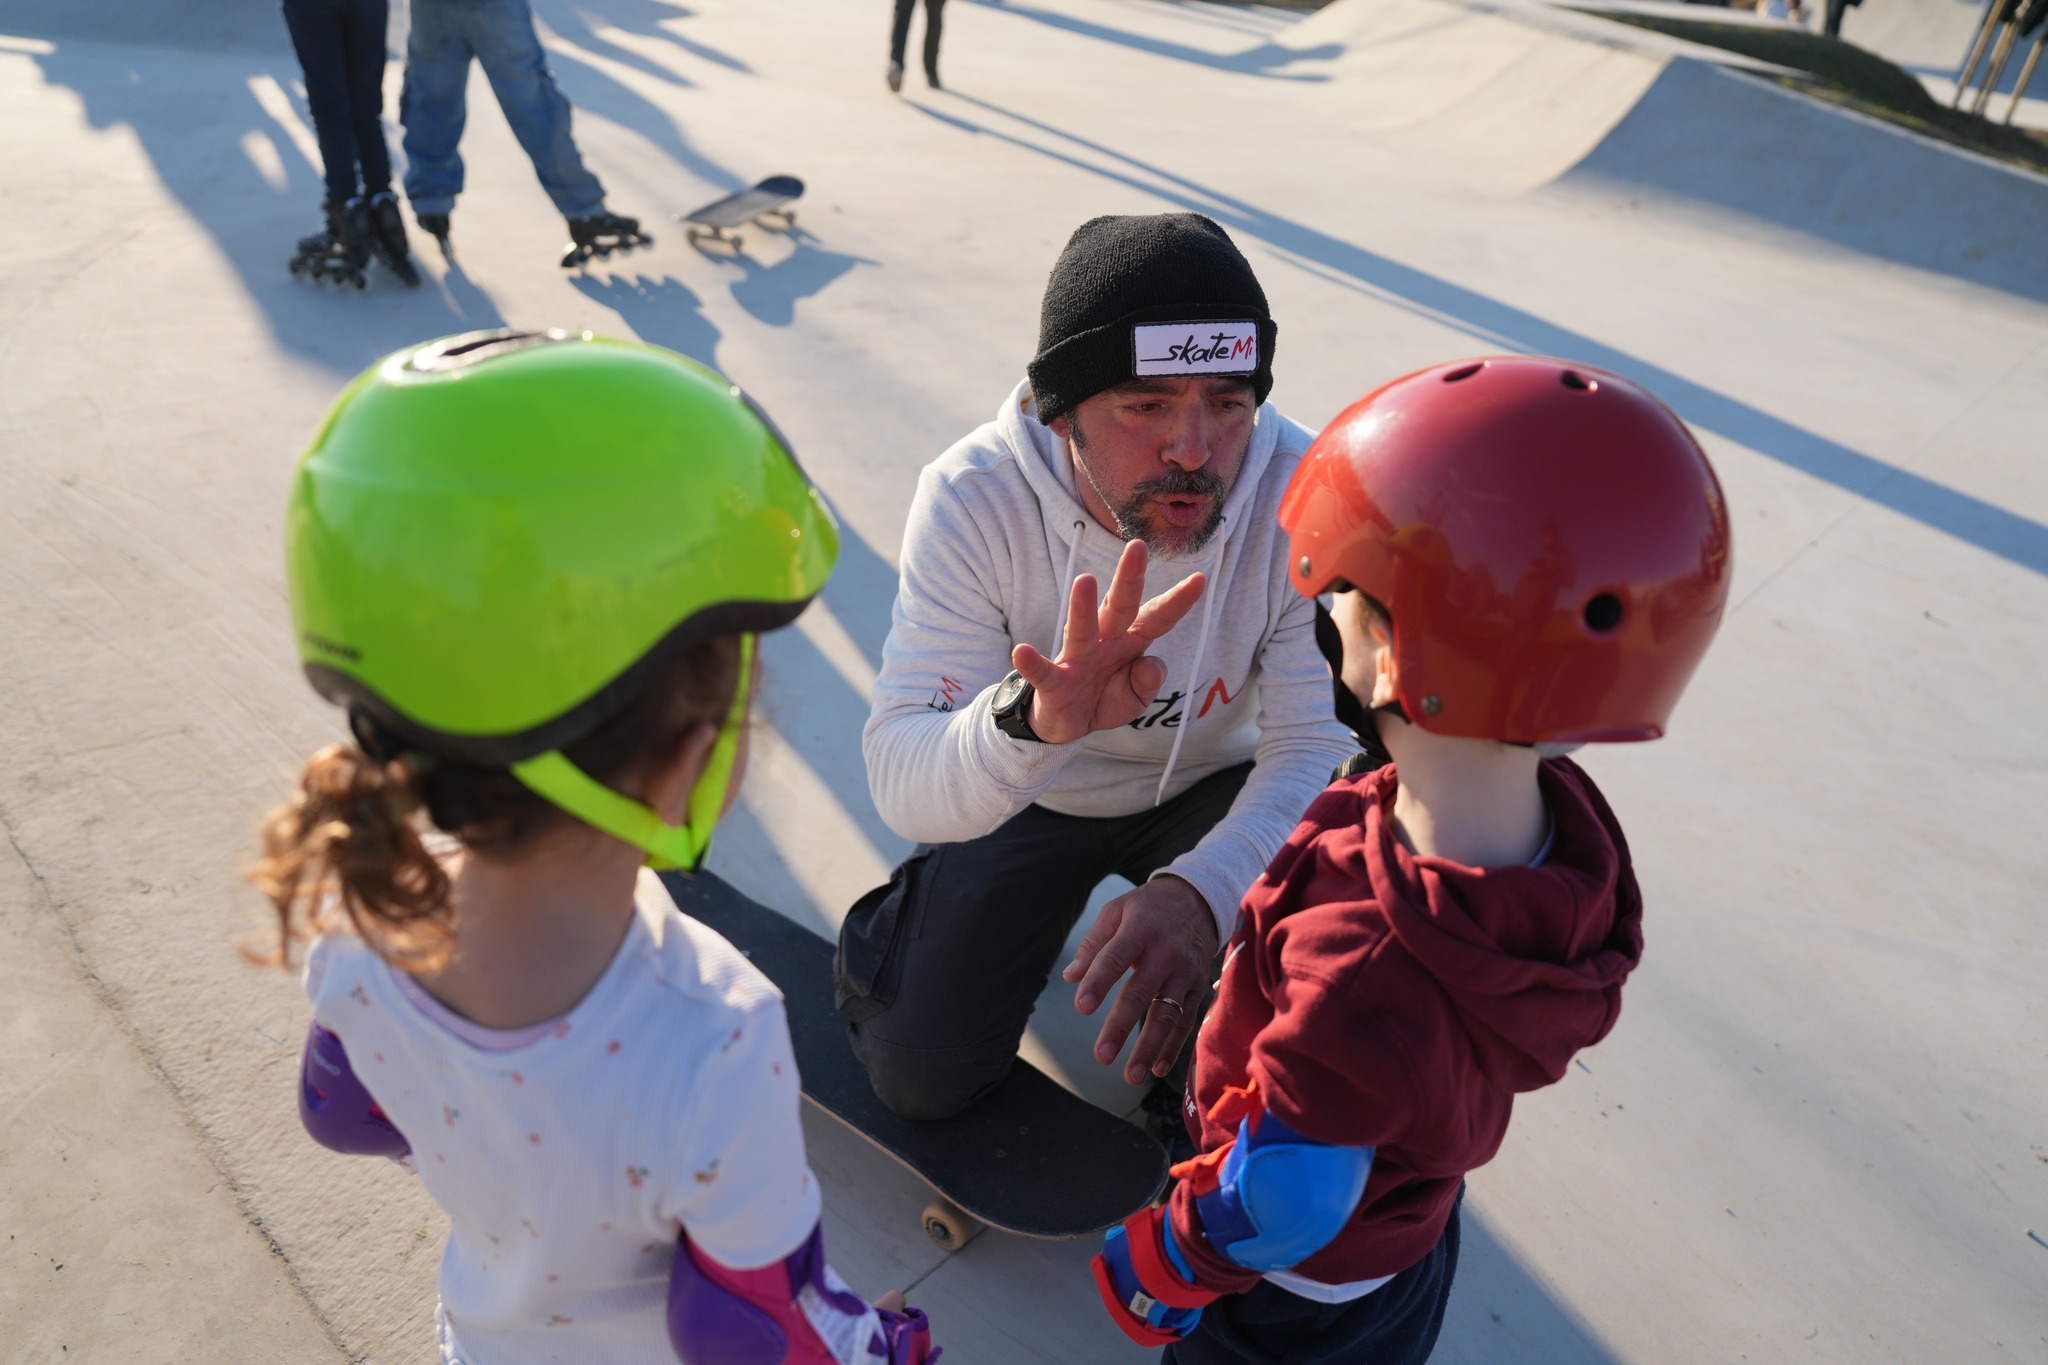 Inaugurazione skatepark: bambini che ascoltano una spiegazione